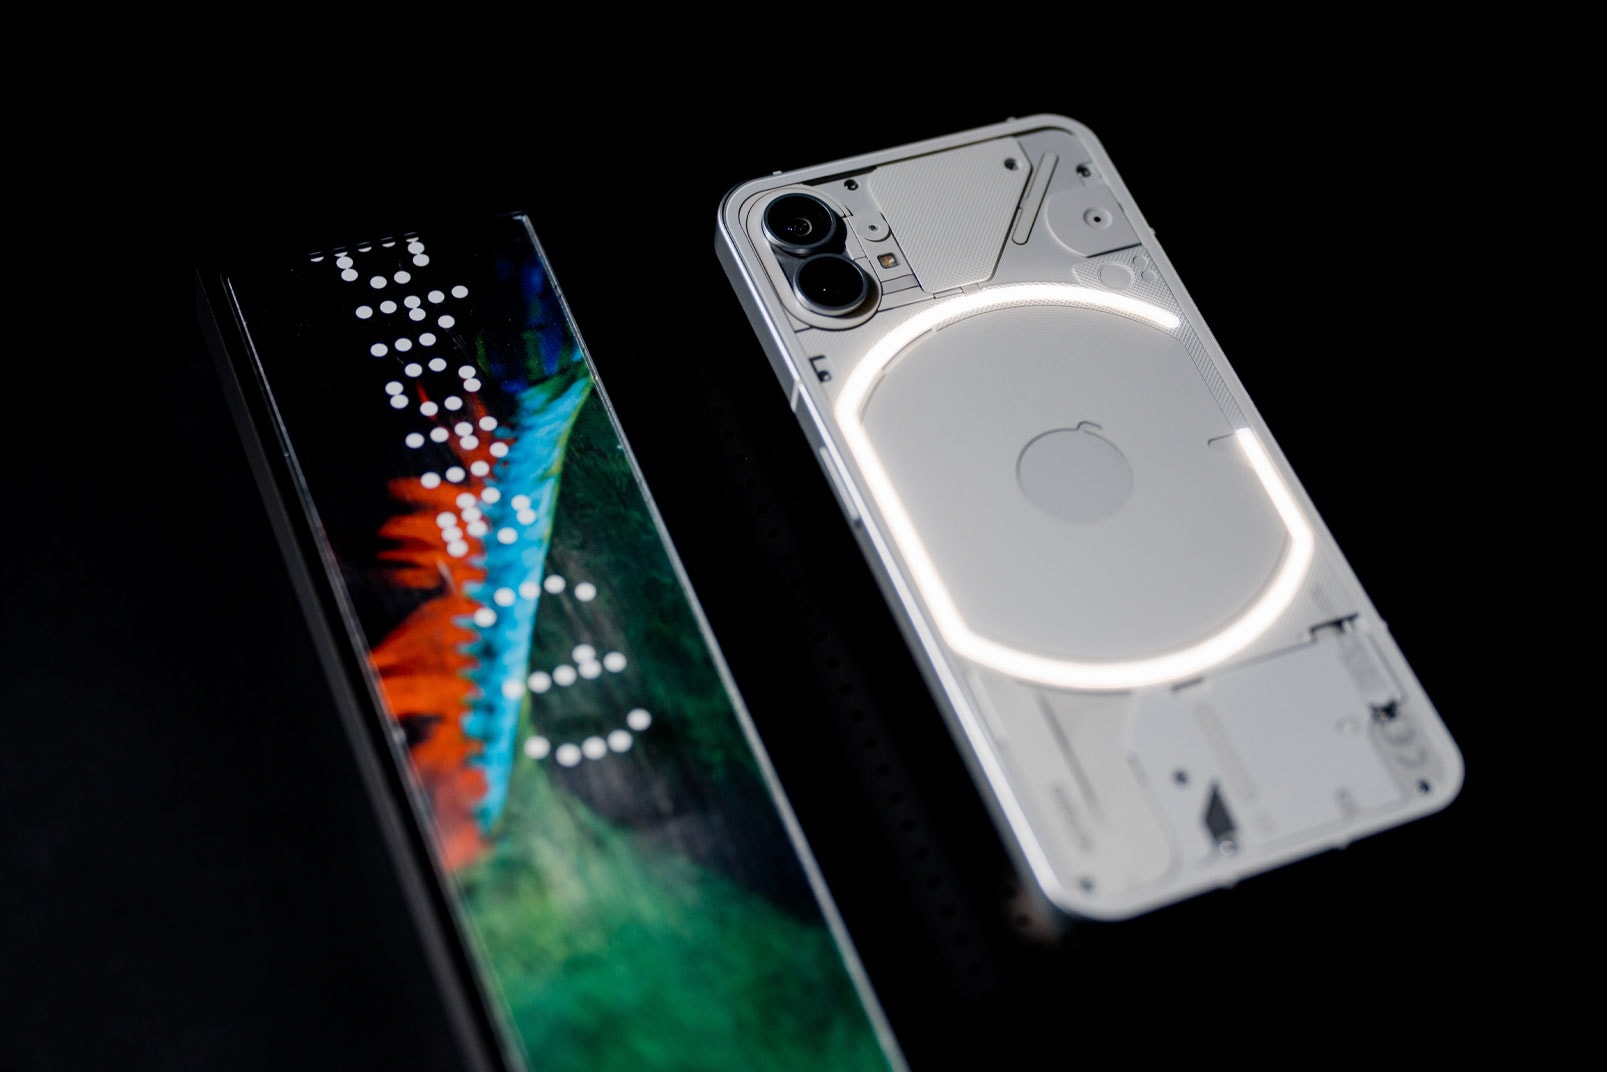 낫싱의 스마트폰 '폰원'의 디자인이 공개됐다, phone (1), 이어원, 이어폰